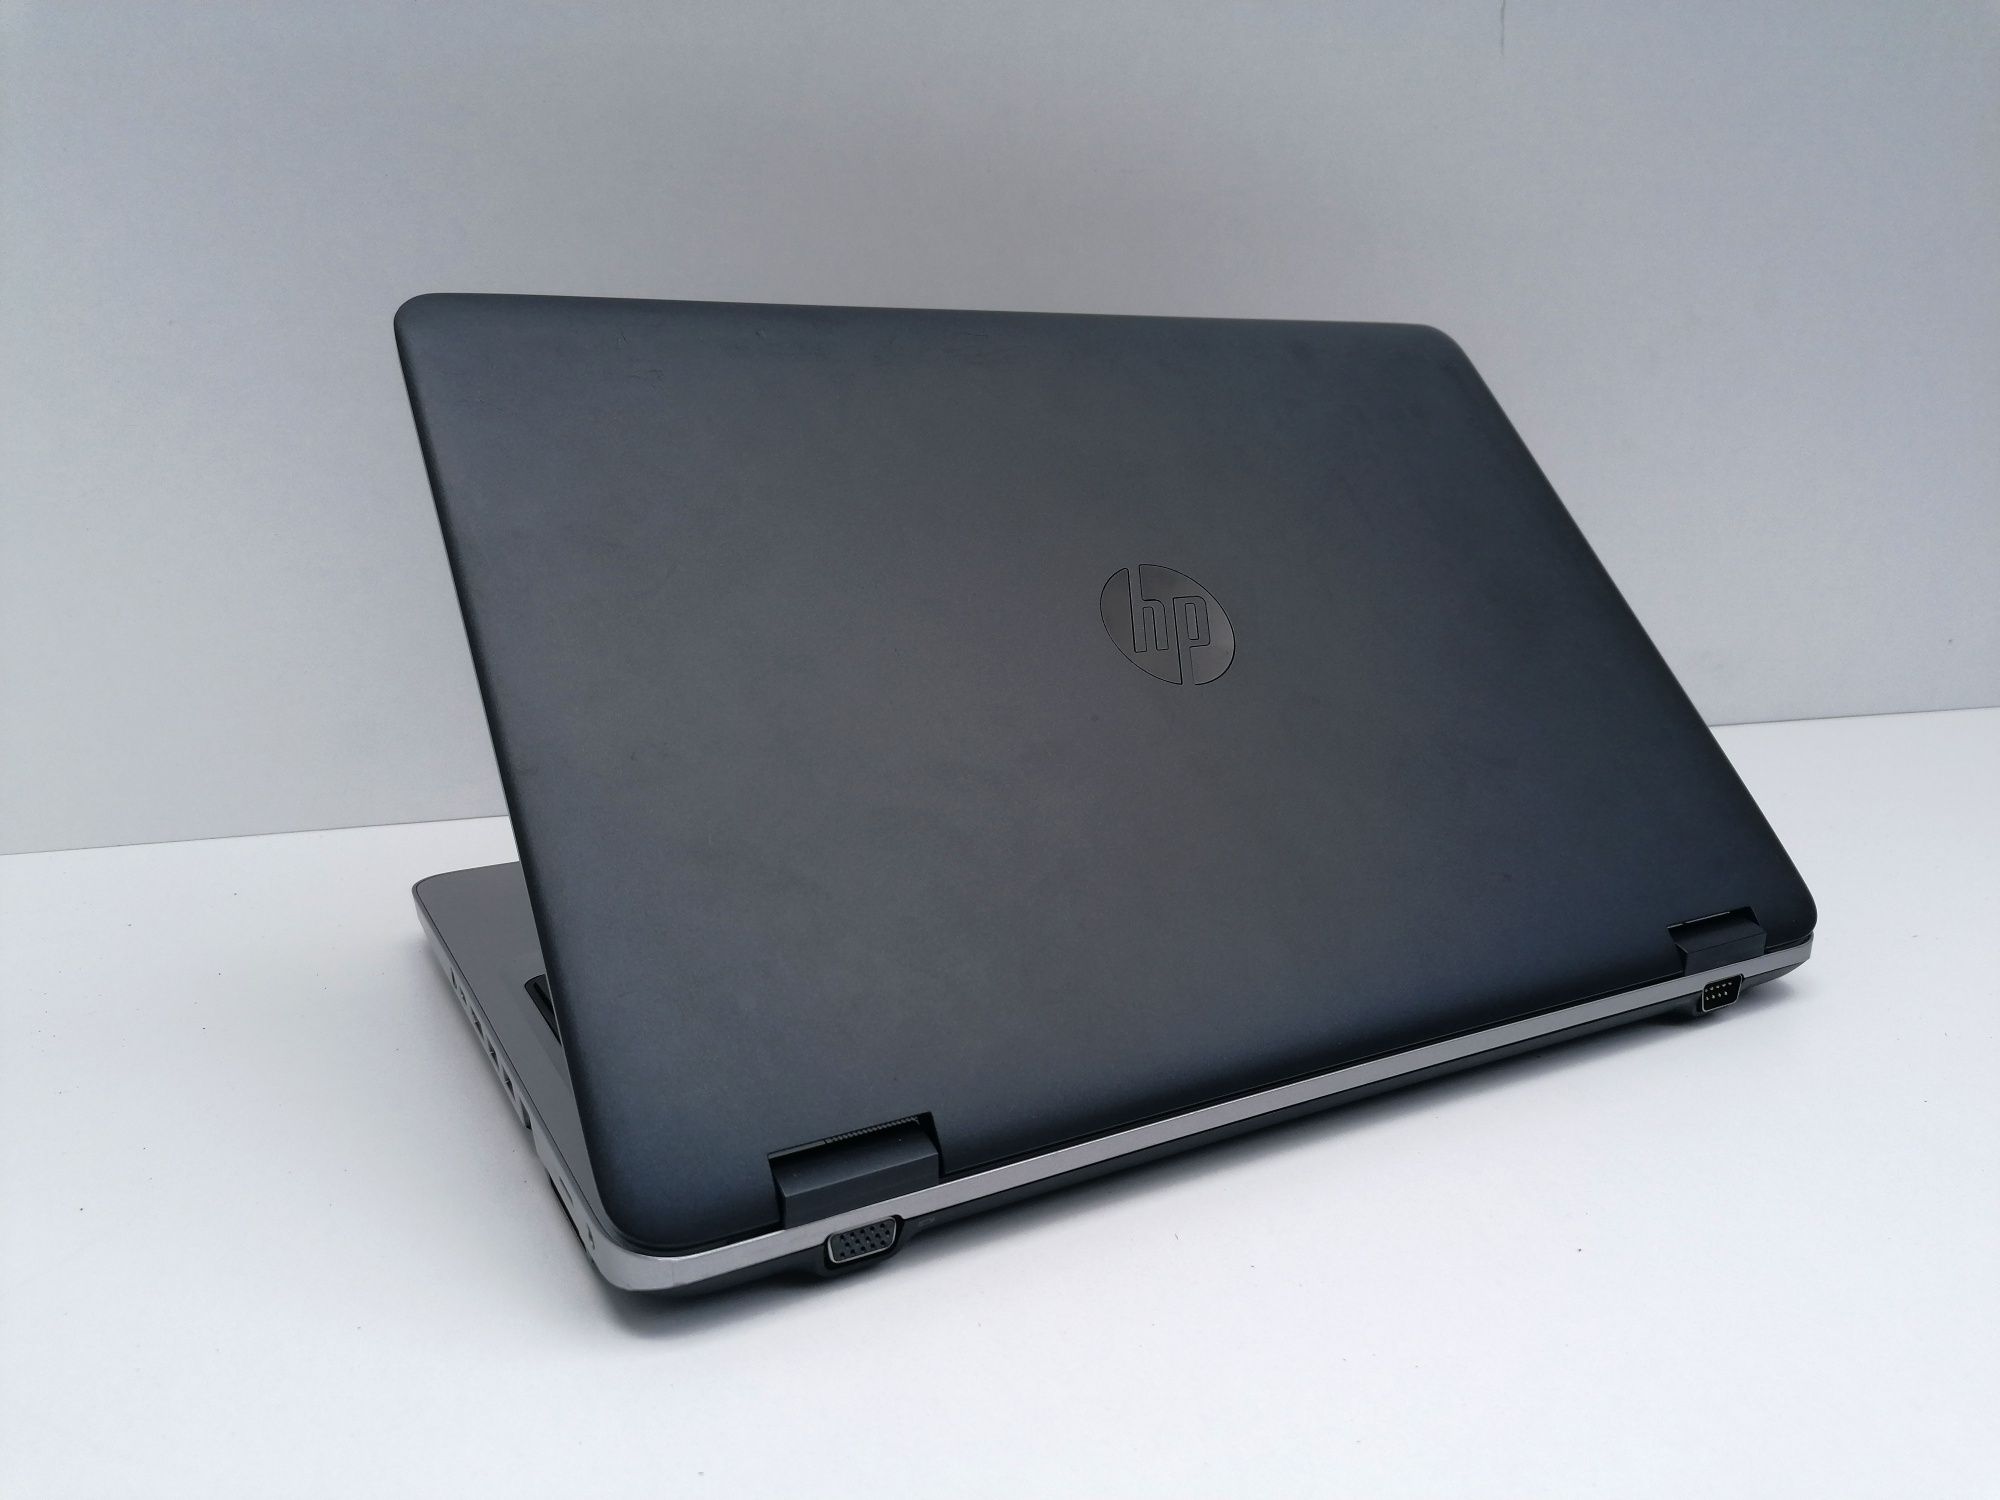 Laptop HP ProBook 650 G2 - Intel i5 6200U, 256 GB SSD, 8GB RAM